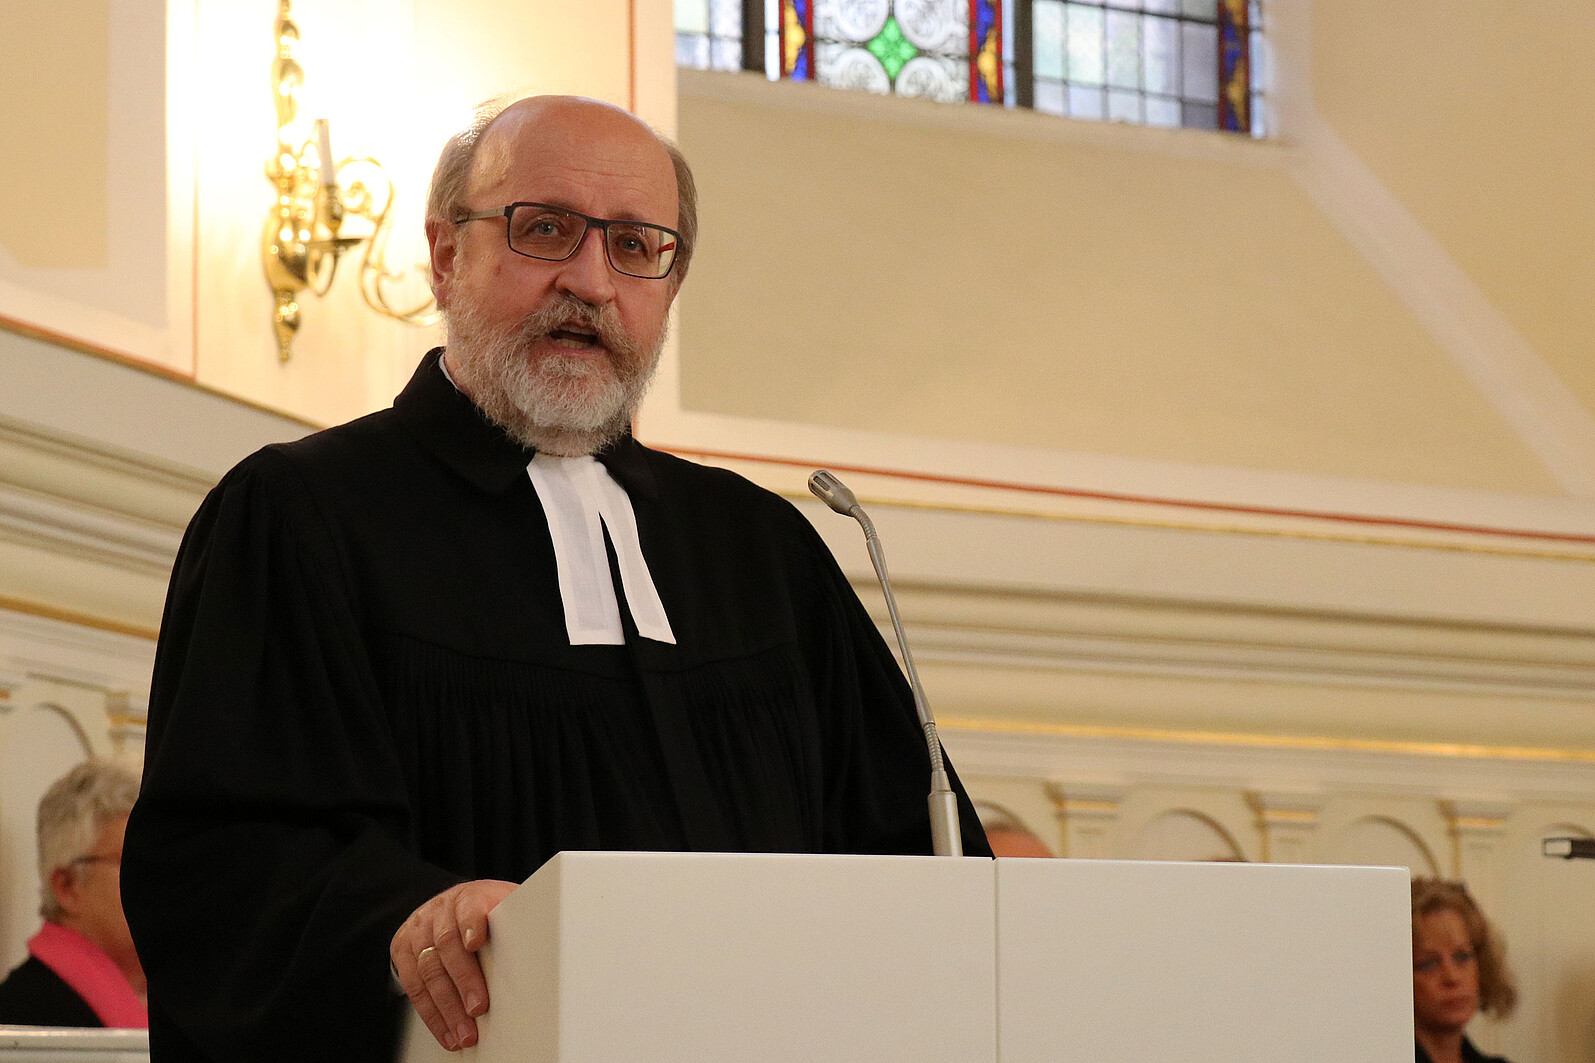 Pfarrer Hans-Peter Bruckhoff, Superintendent des Ev. Kirchenkreises Aachen, würdigte die Verdienste von Andreas Hinze - als Pfarrer wie als Mensch.